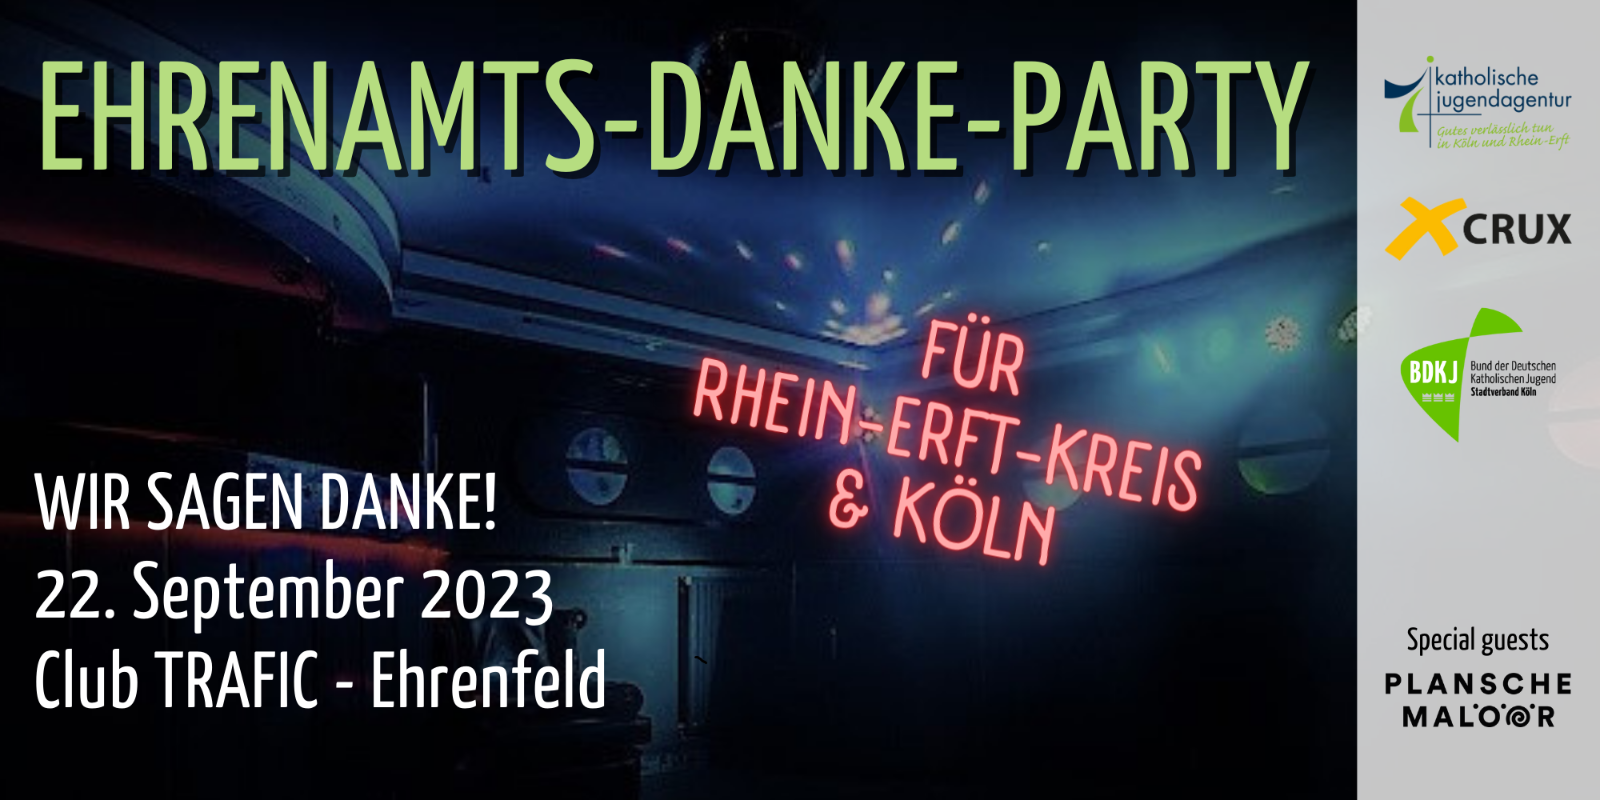 Ehrenamts-Danke-Party 2022